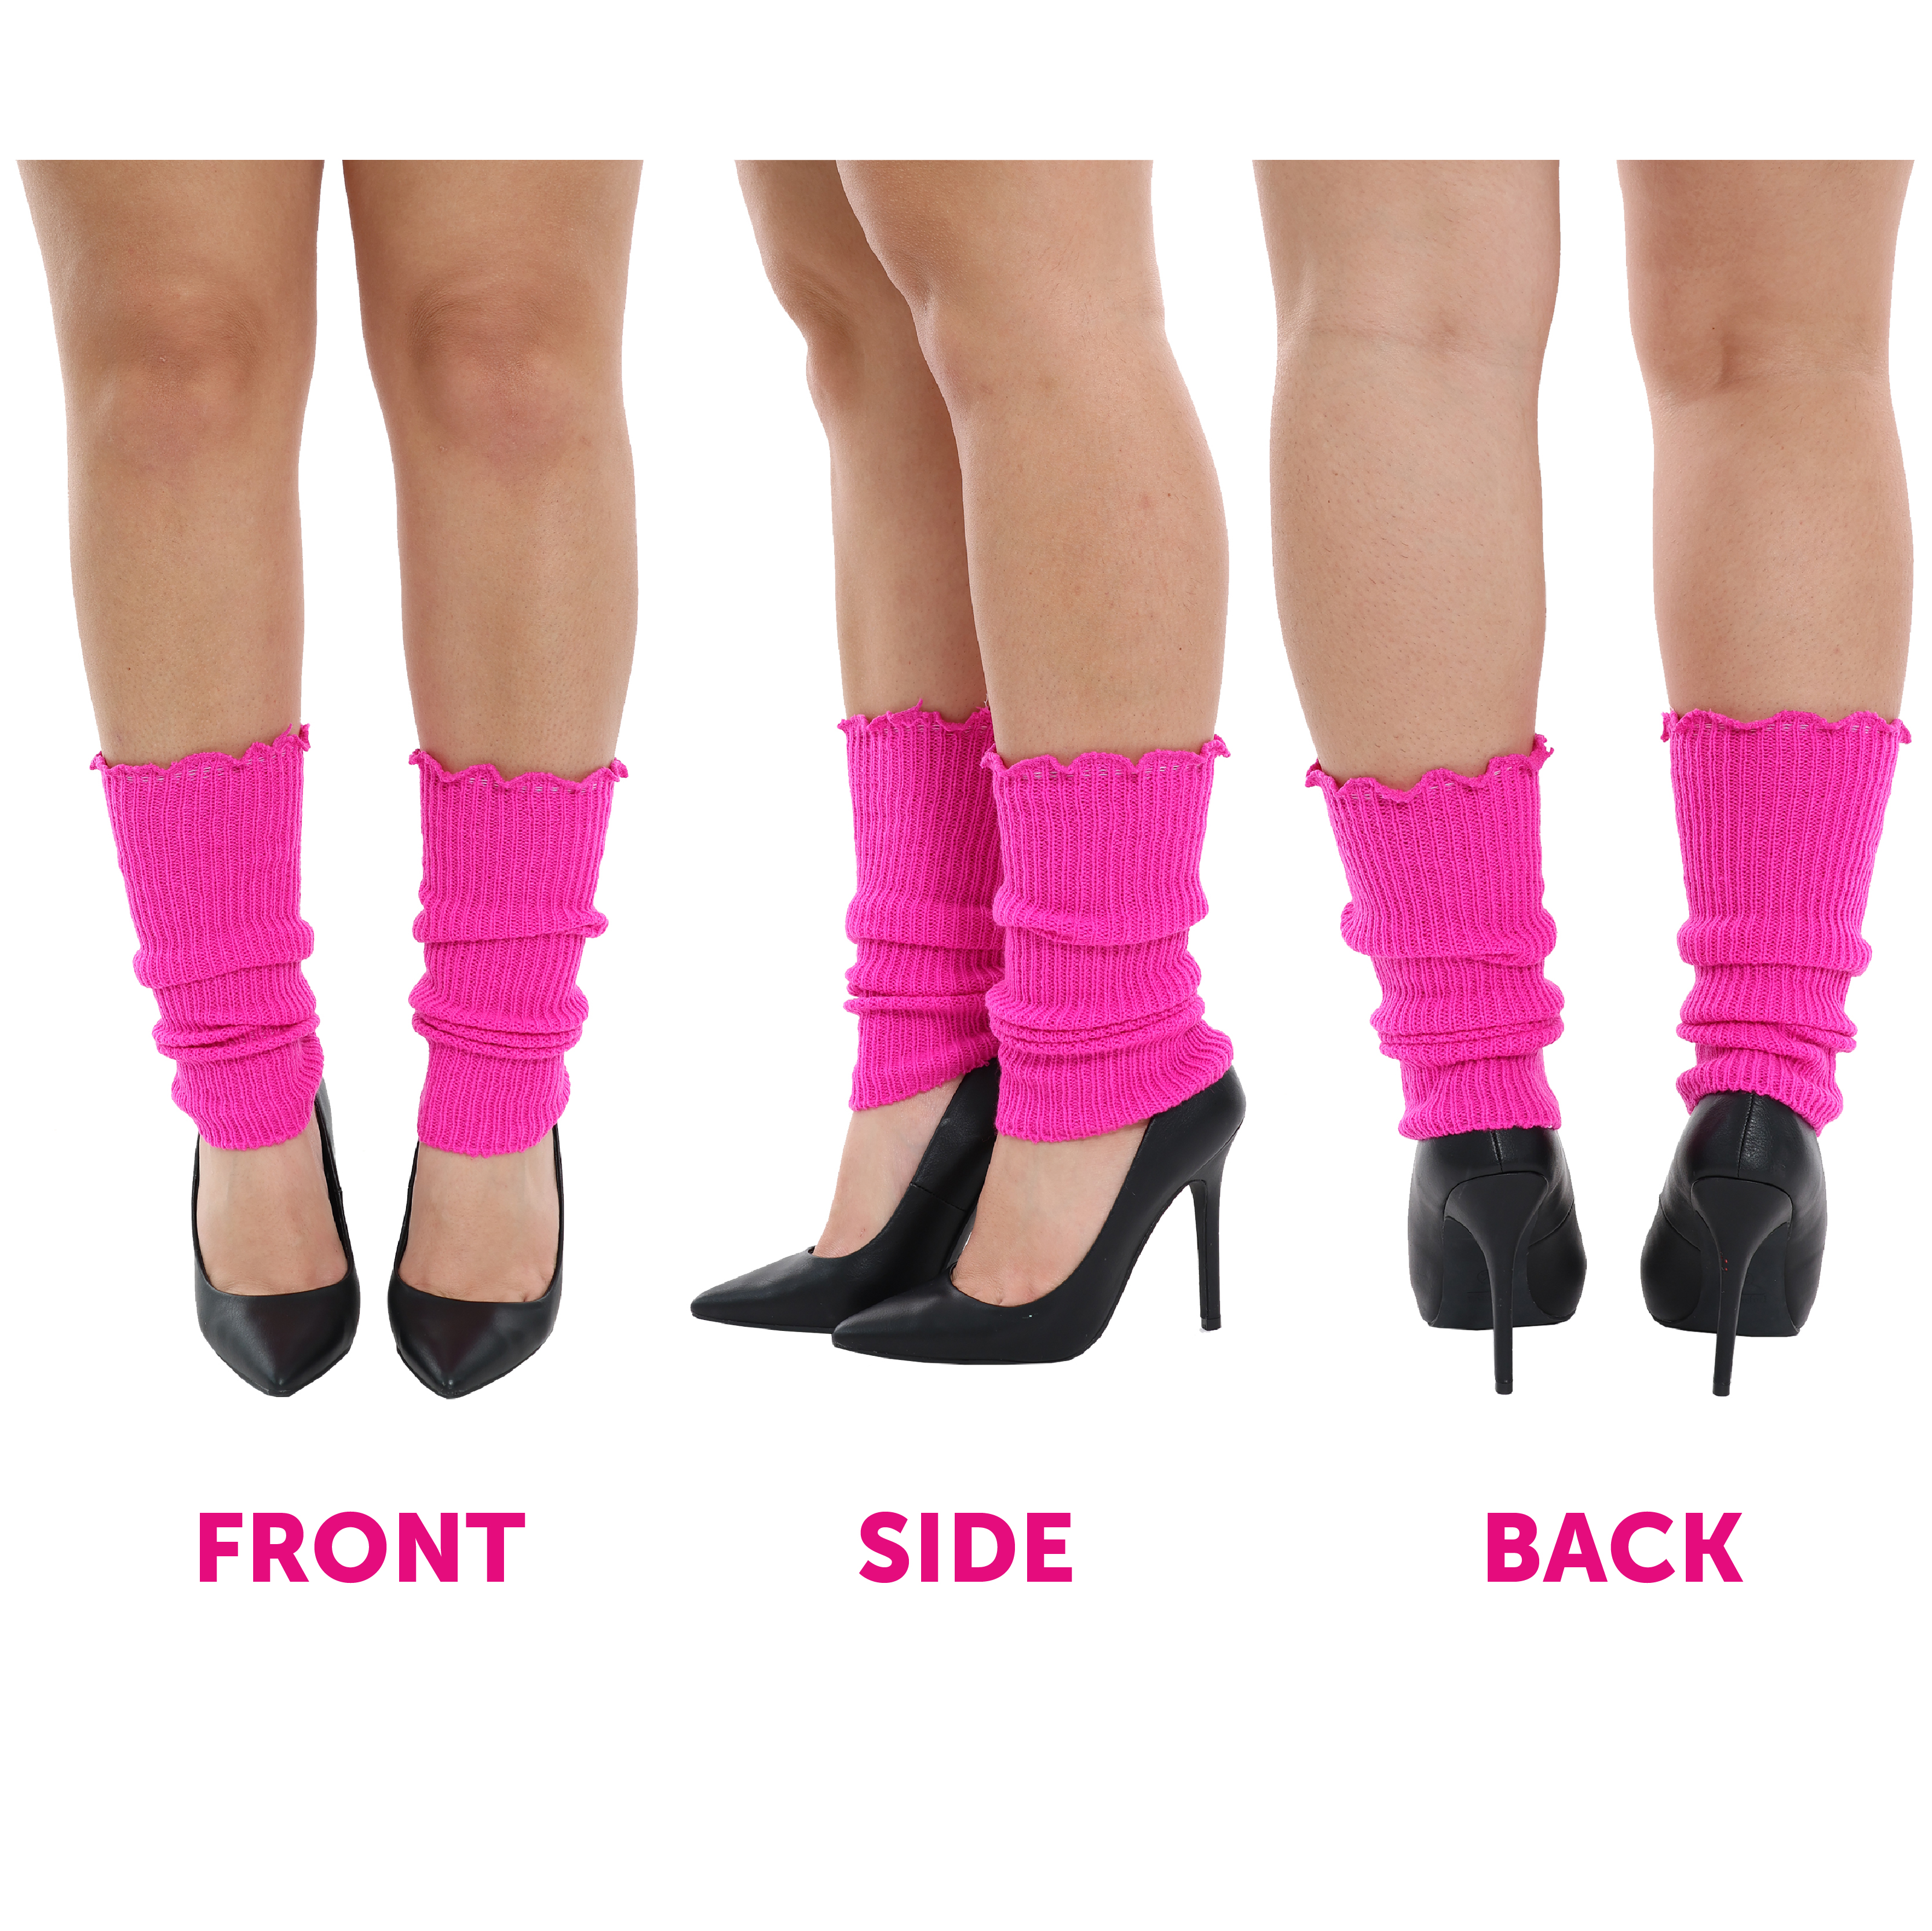 1980s Hot Pink Leg Warmers - I Love Fancy Dress